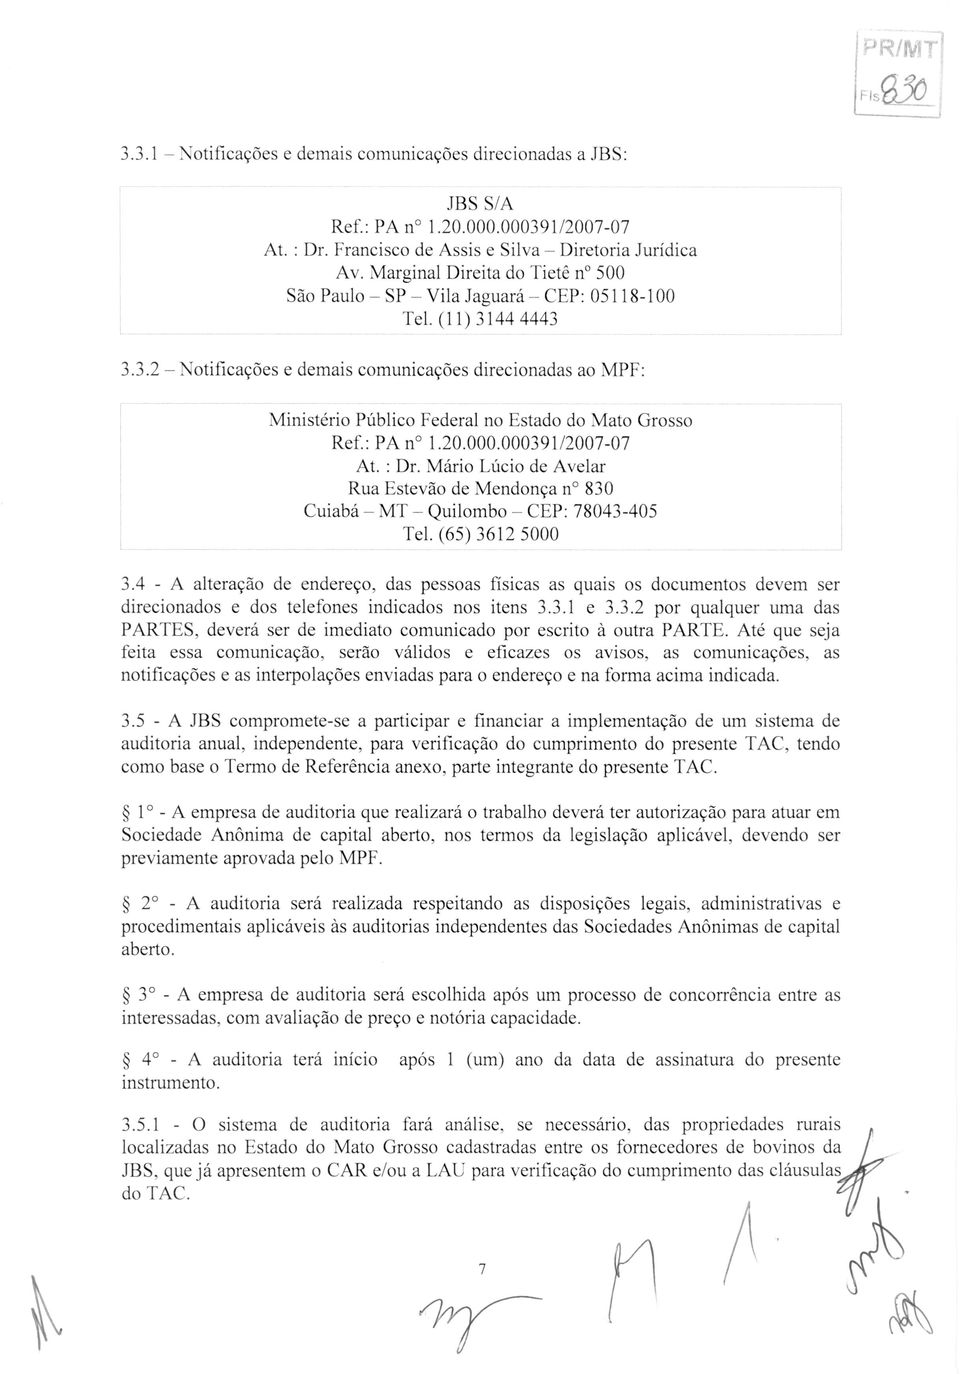 44 4443 3.3.2 NotificaeOes e demais comunicacoes direcionadas ao MPF: Ministerio PUblico Federal no Estado do Mato Grosso Ref.: PA n 1.20.000.000391/2007-07 At. : Dr.